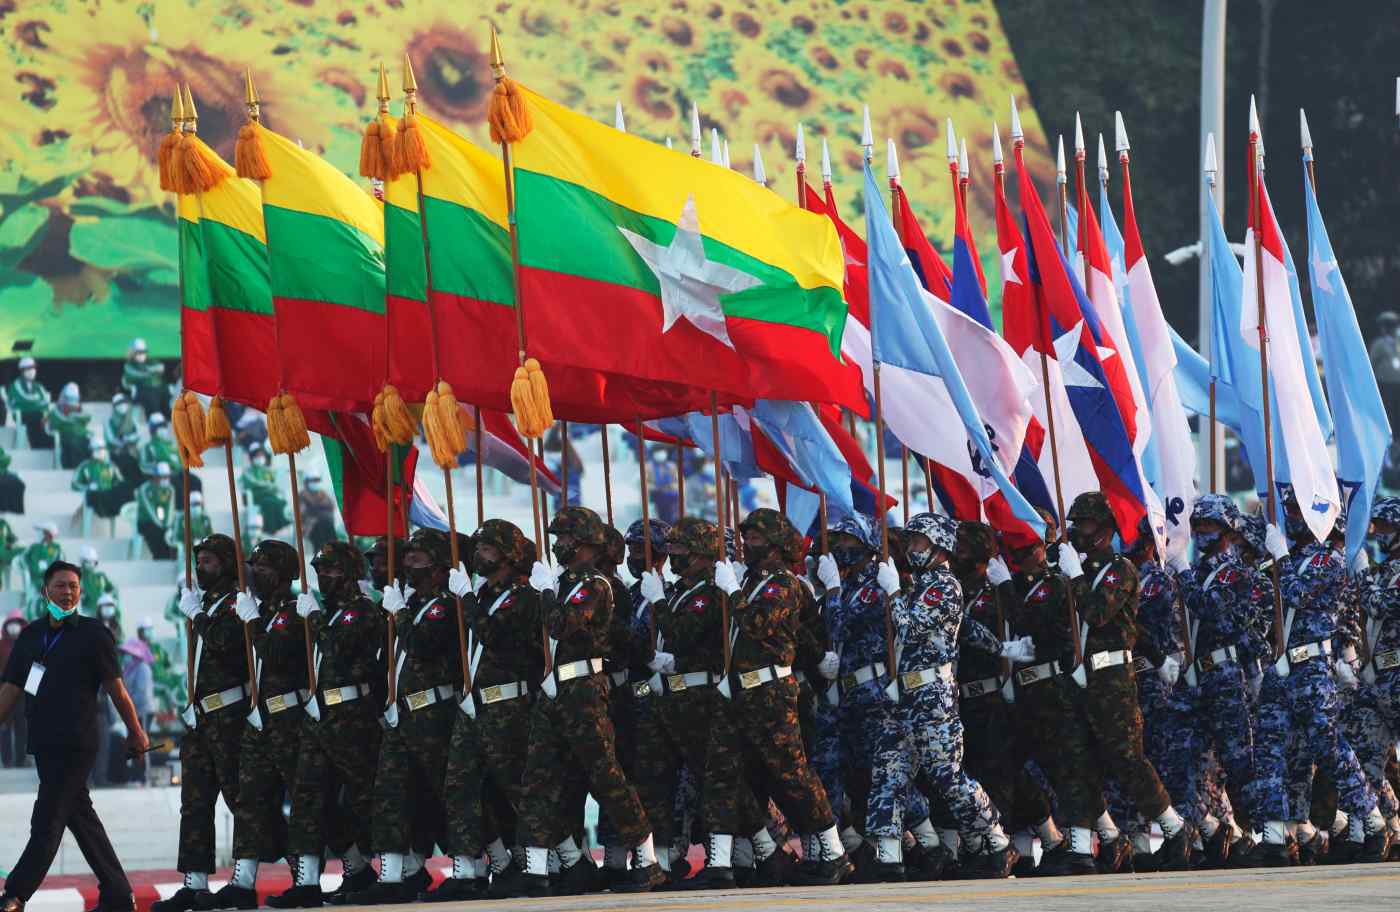 Cờ mới của Myanmar được giới chuyên môn nhận định rất đặc biệt, tạo thêm những làn sóng tích cực trong cộng đồng quốc tế. Điều đó chứng tỏ sự thay đổi đang diễn ra mạnh mẽ tại đất nước này và hy vọng cho tương lai tươi sáng. Hãy chiêm ngưỡng hình ảnh của lá cờ này để cảm nhận sức mạnh và ý nghĩa mà nó mang lại.